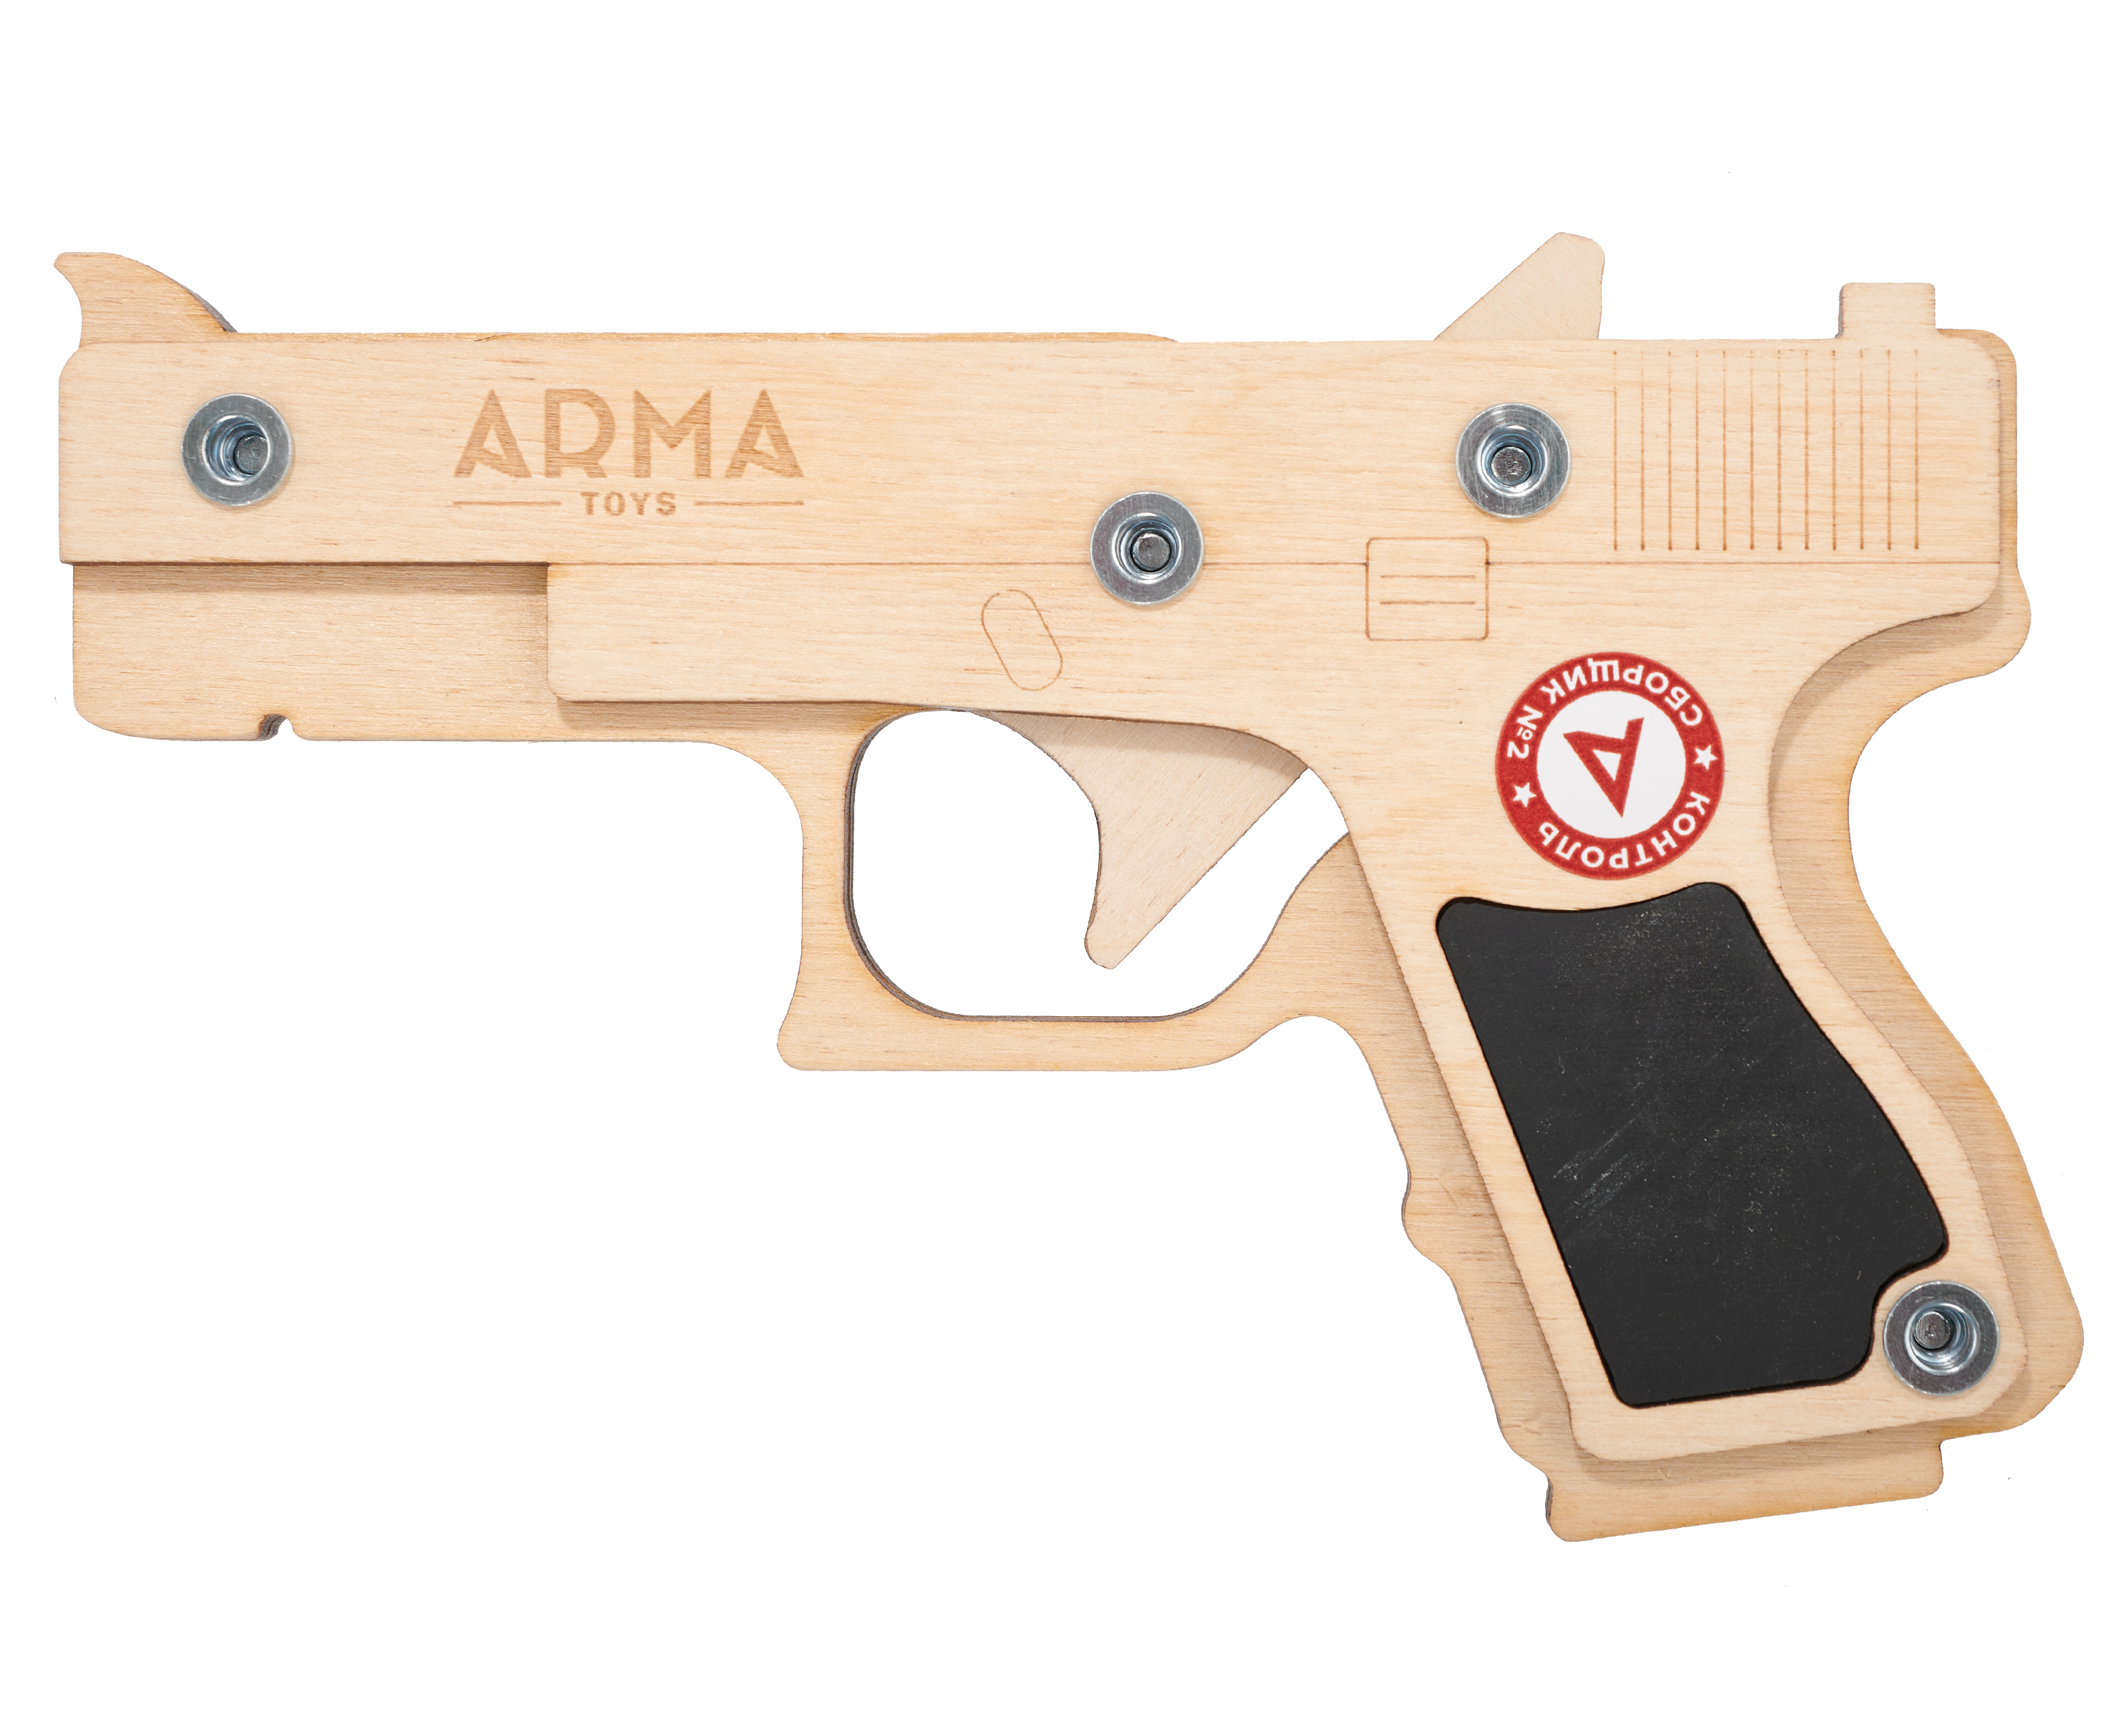 Резинкострел игрушечный Arma toys пистолет Glock макет, Compact, ATL001 резинкострел игрушечный arma toys пистолет glock макет compact atl001